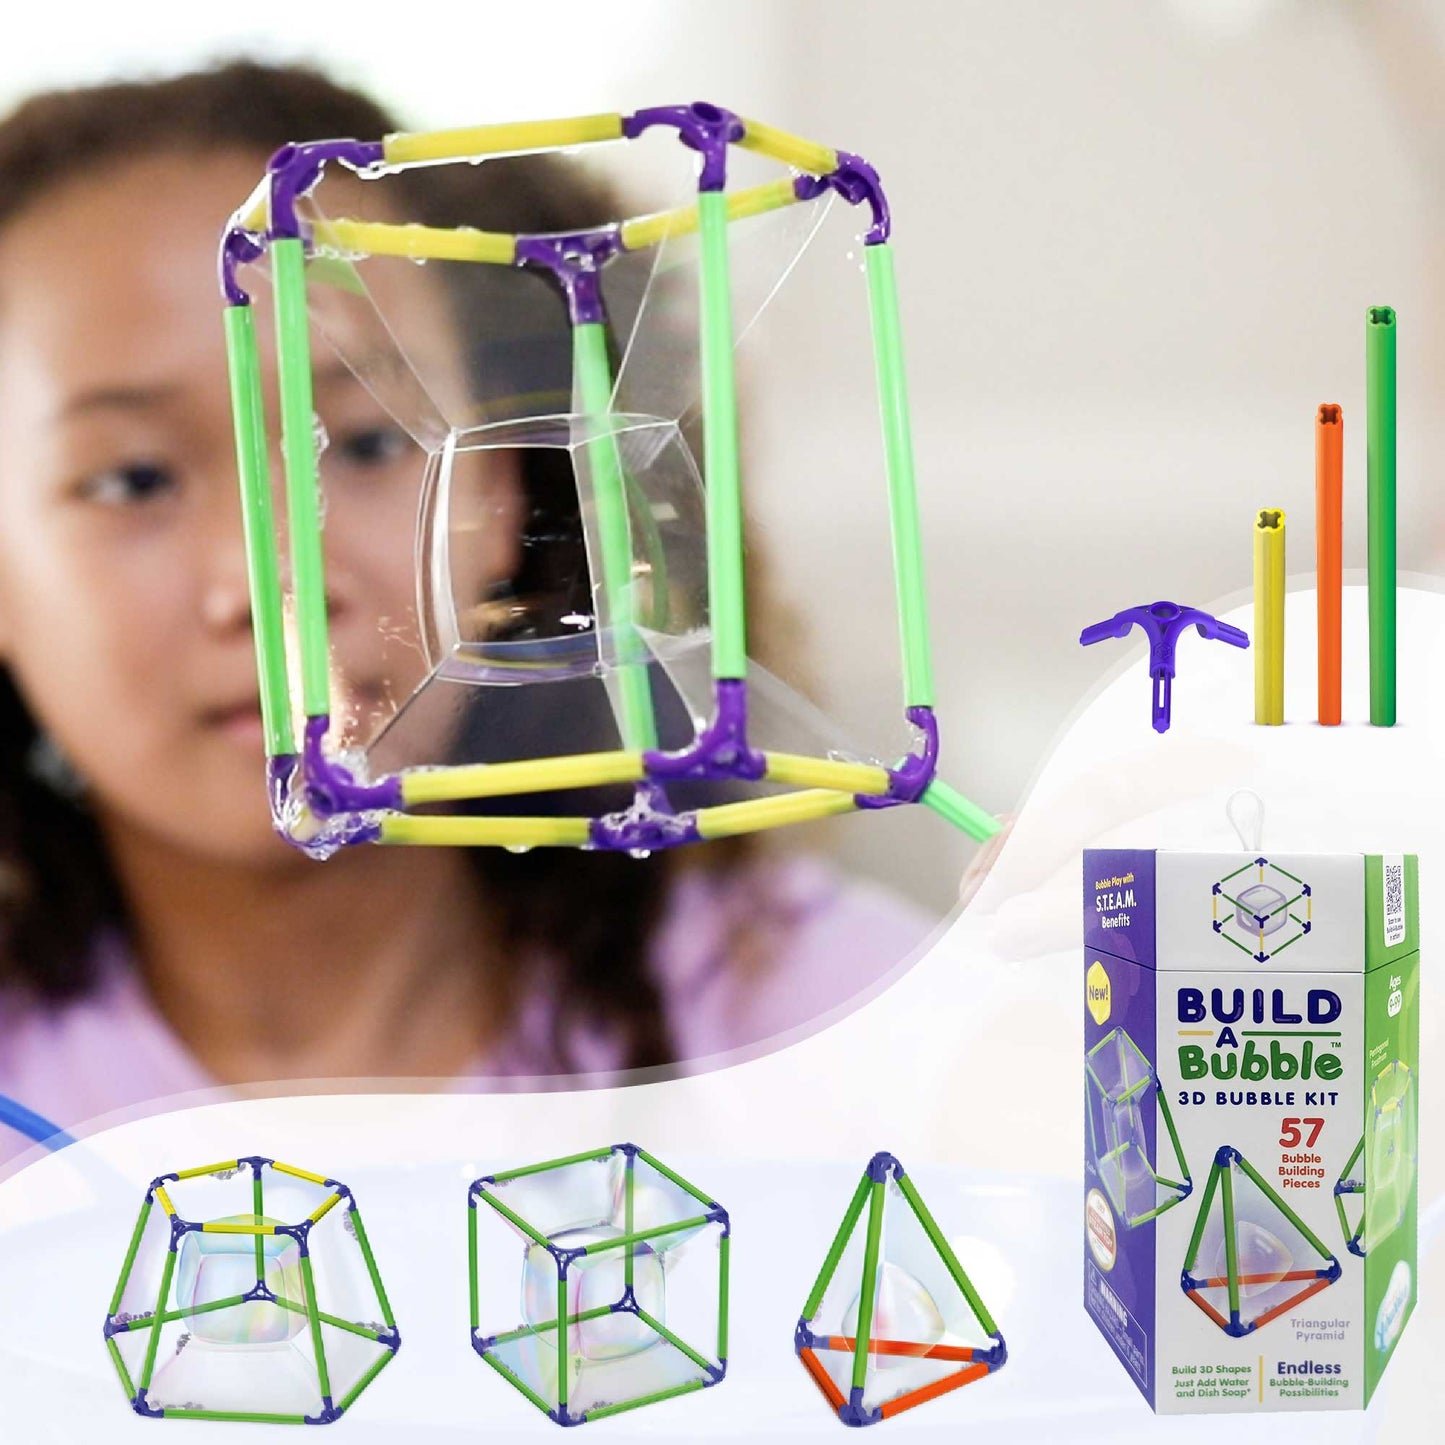 Build a Bubble 3D Kit